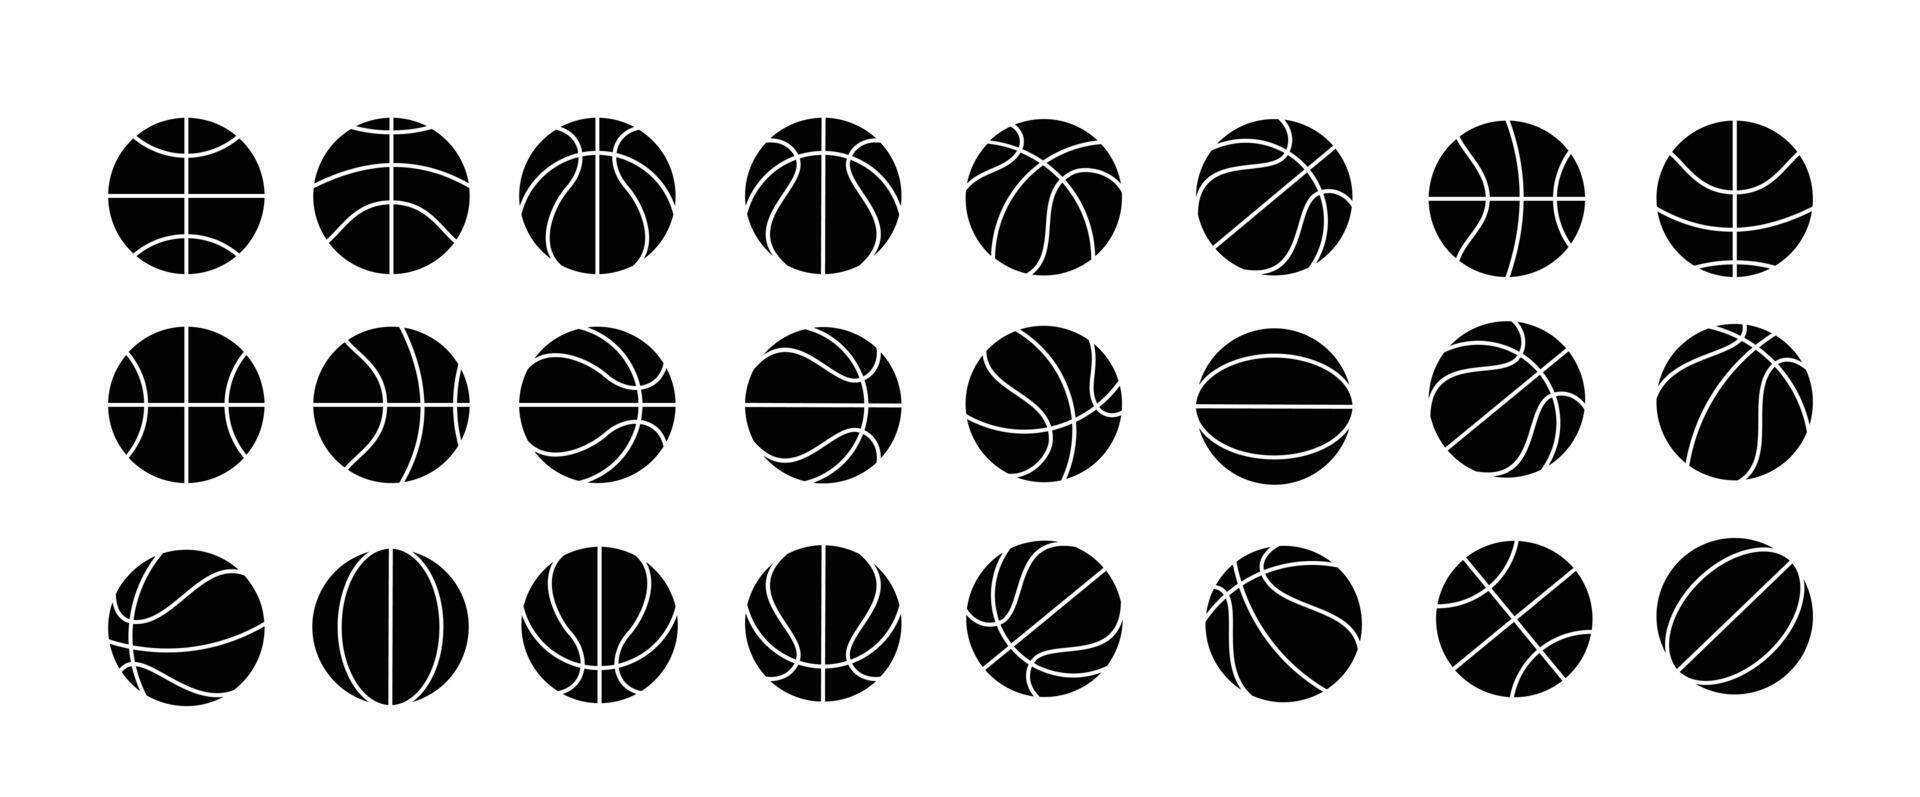 uppsättning av basketboll bollar. vektor illustration isolerat på en vit bakgrund.